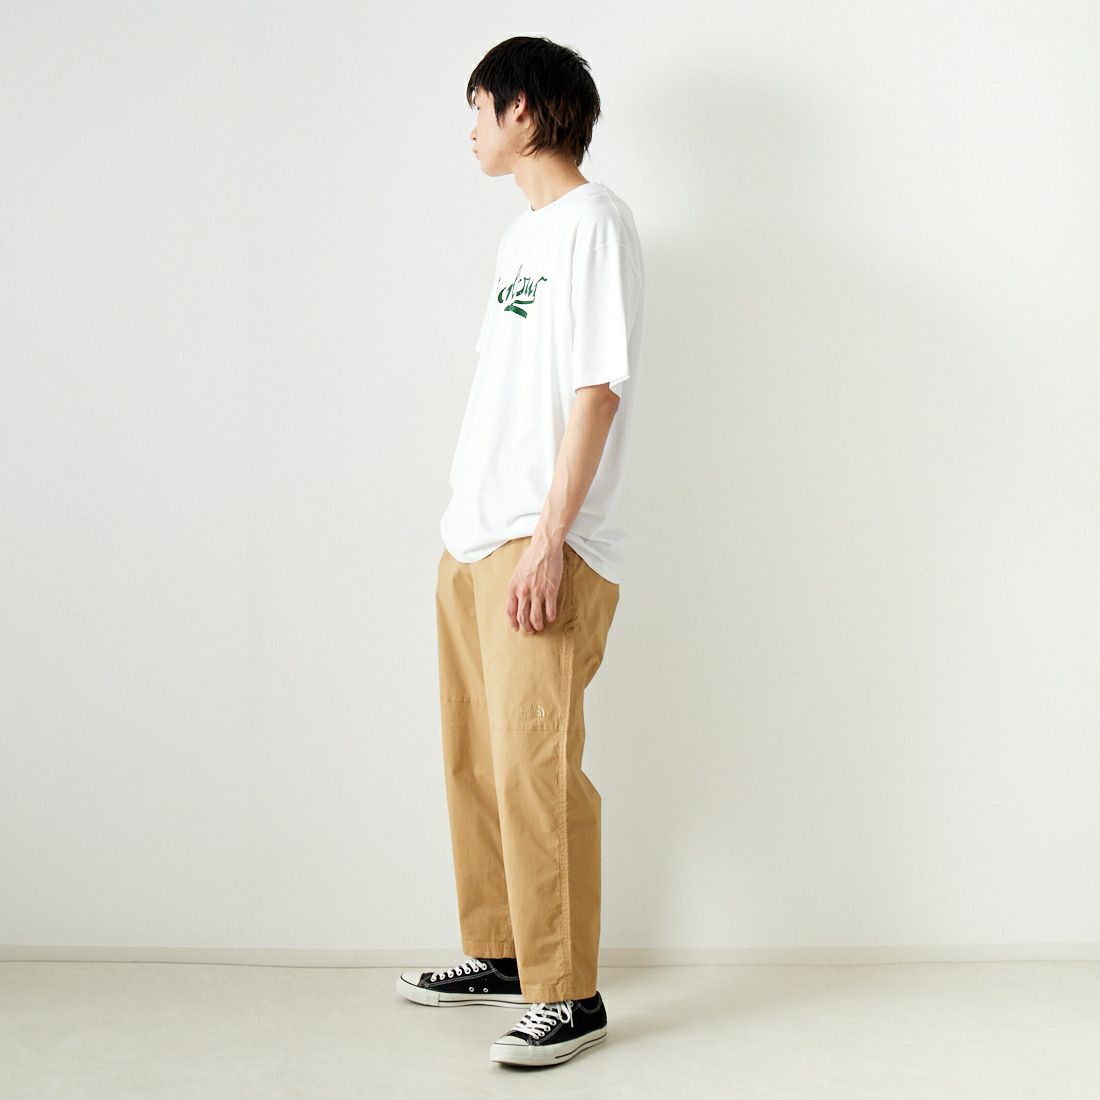 Barbour [バブアー] Grainger アーカイブ ロゴ リラックスフィット Tシャツ [MTS1259] WHITE &&モデル身長：182cm 着用サイズ：42&&